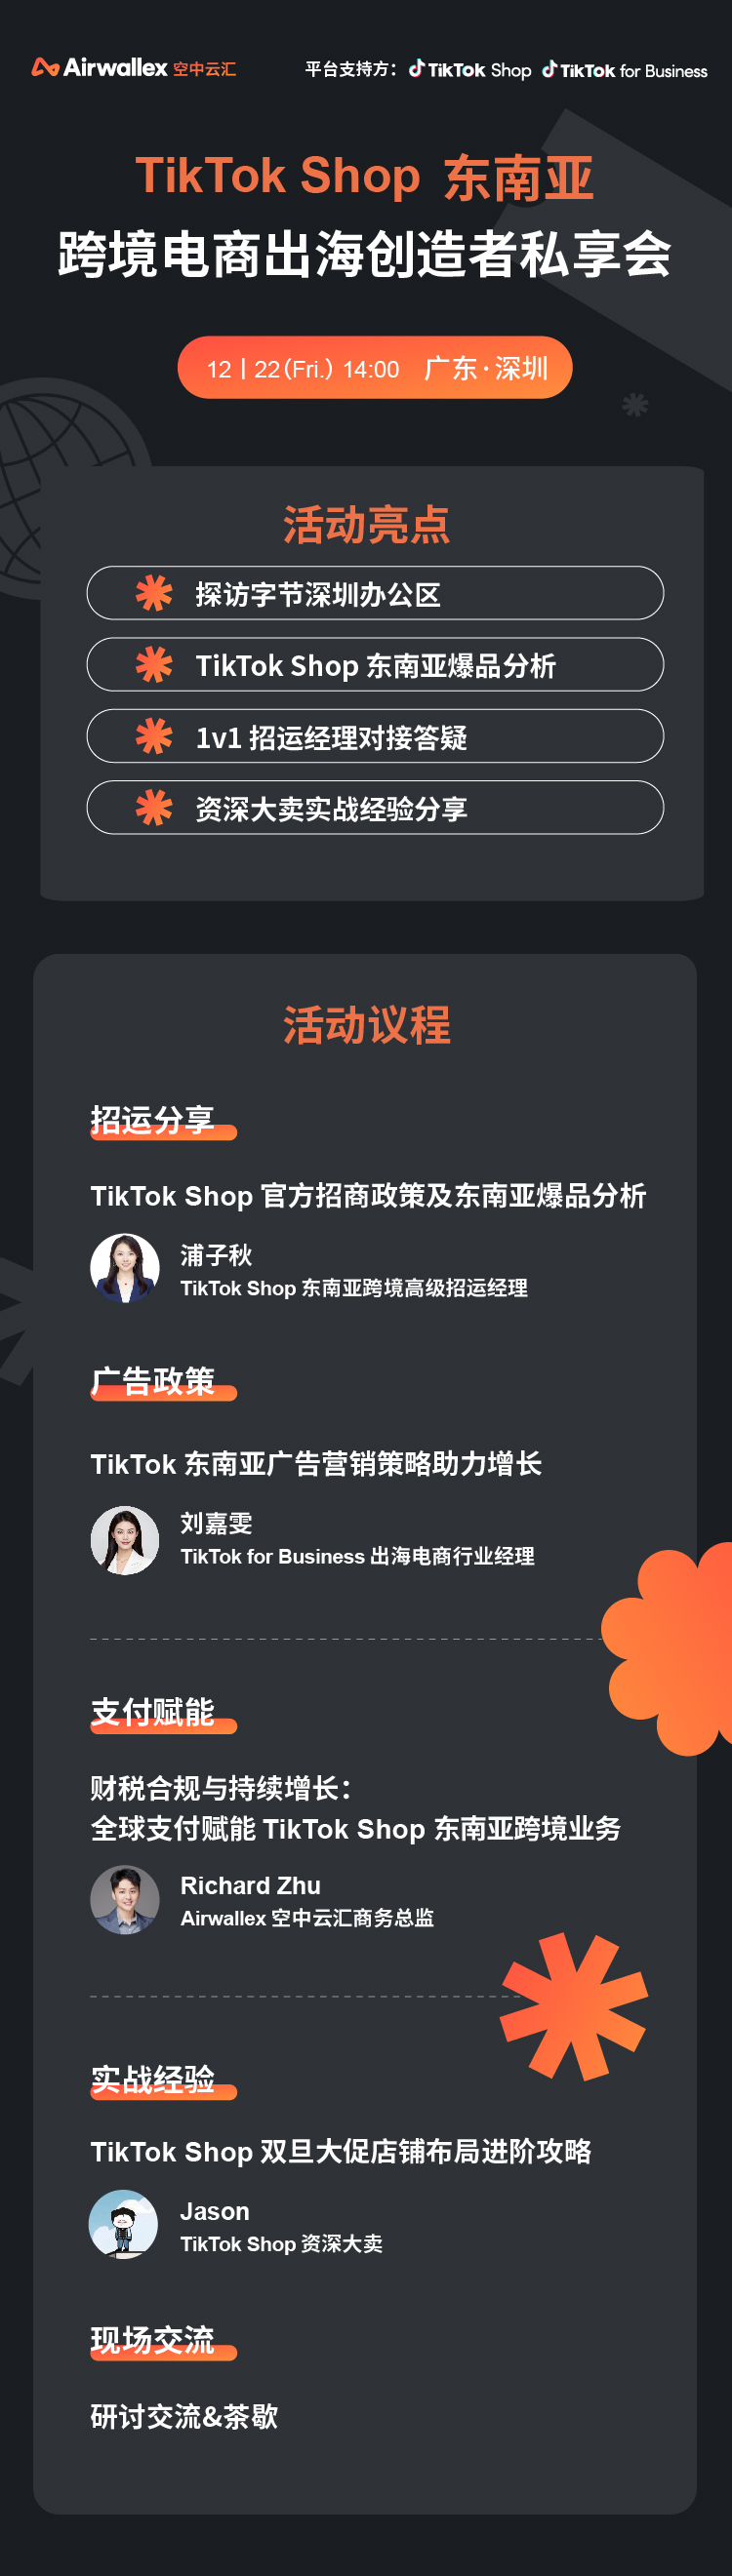 【已结束】TikTok Shop 平台见面会•深圳站